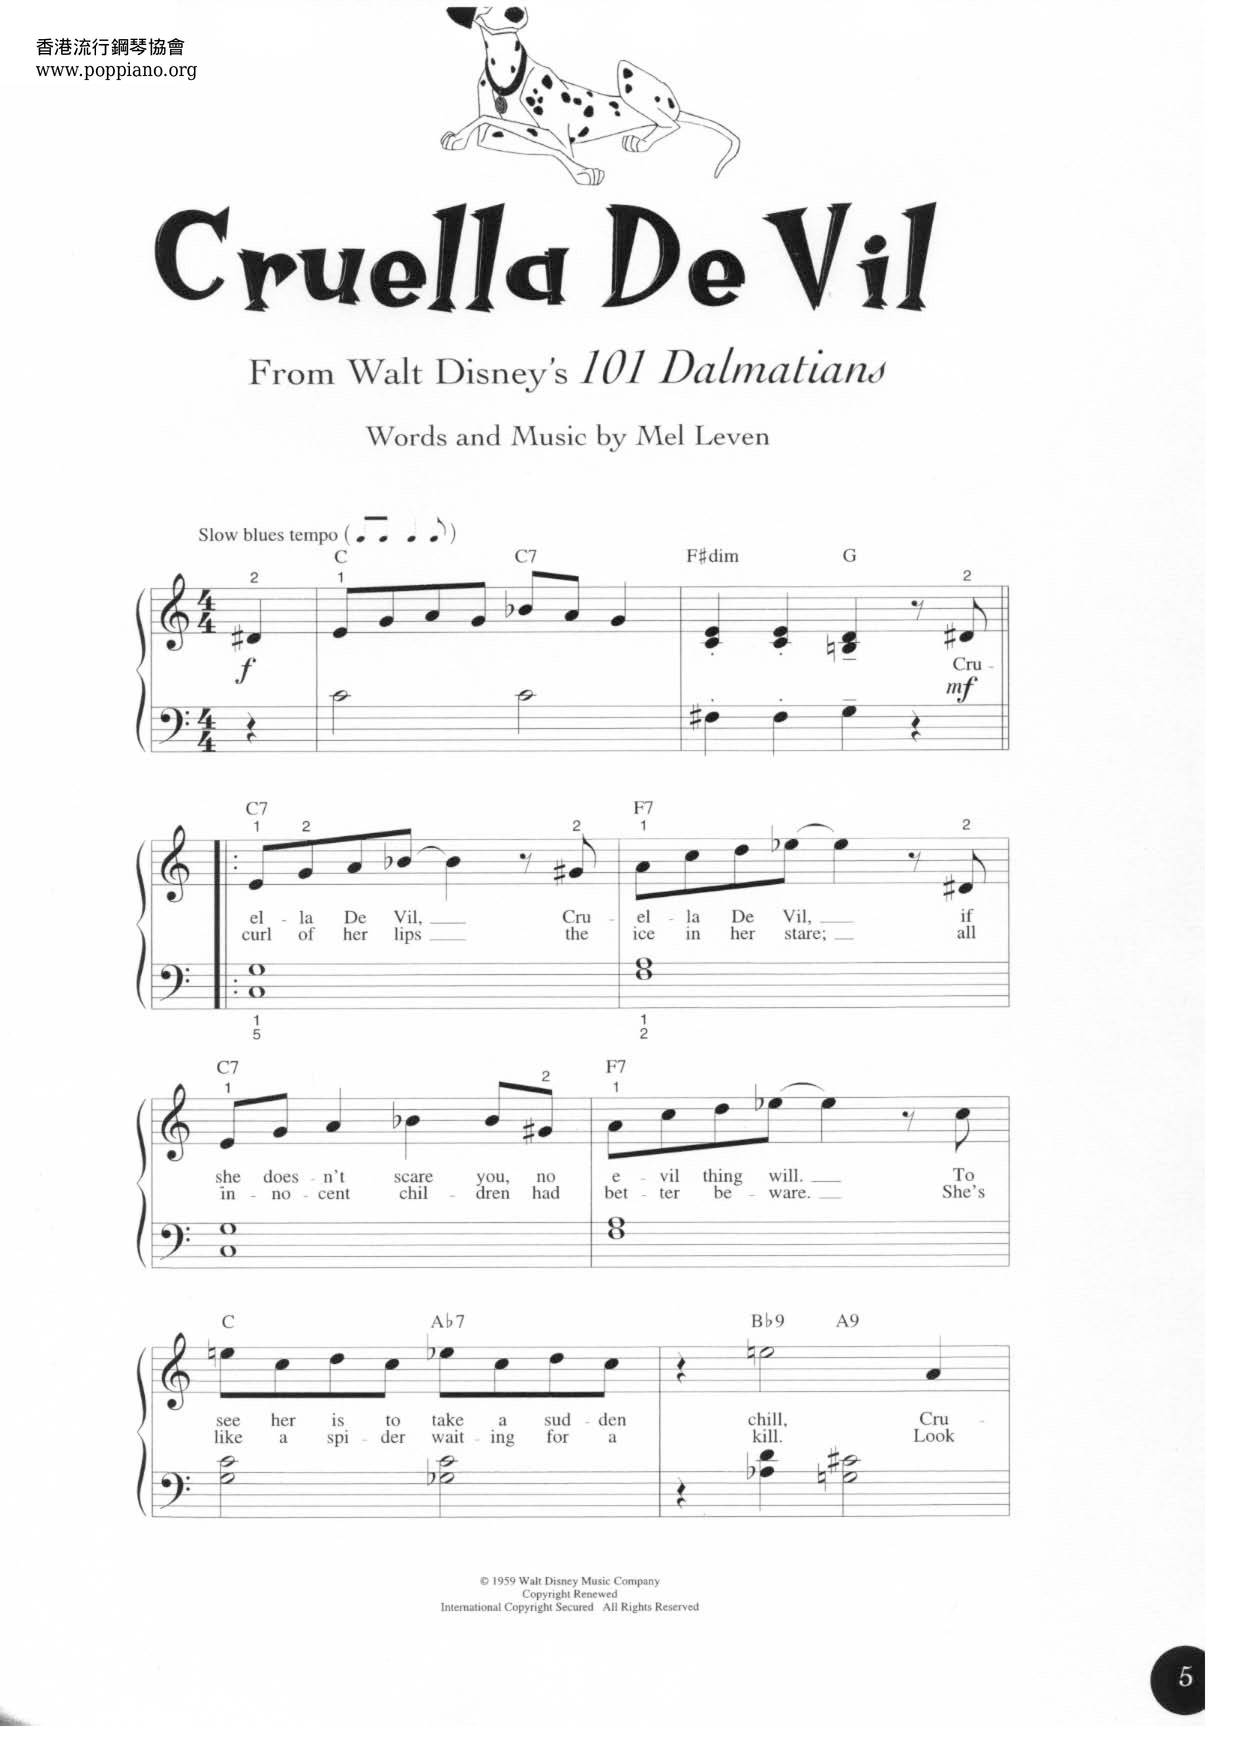 101 Dalmatians - Cruella De Vil Score